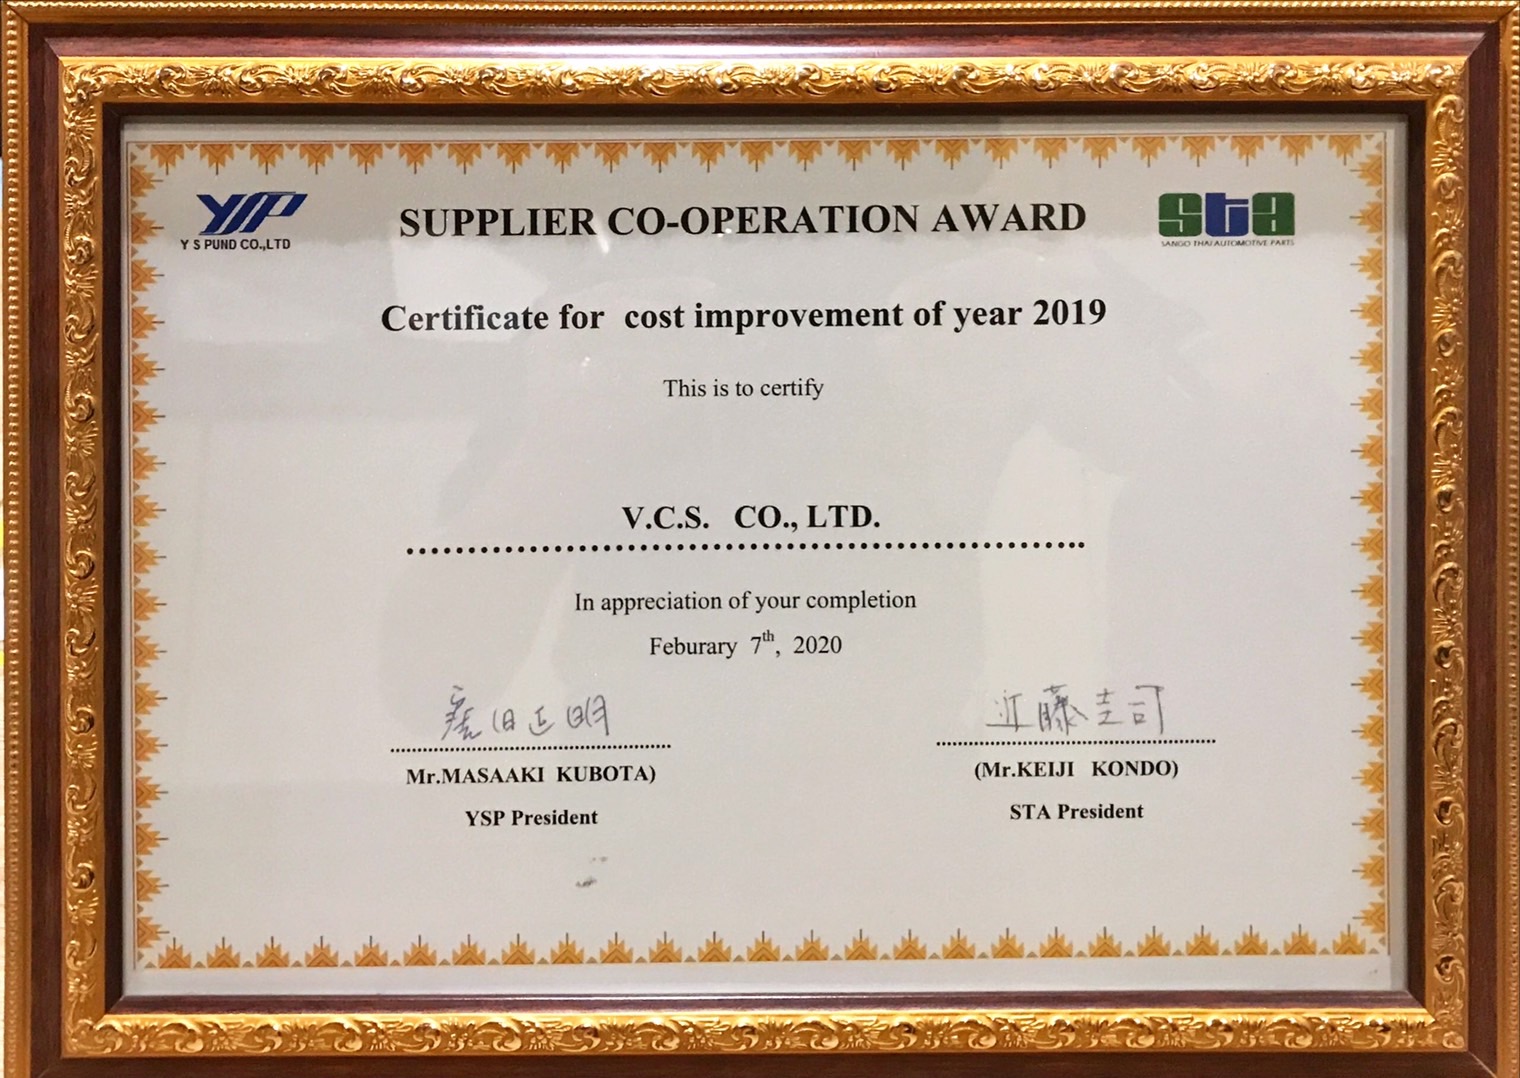 VCS GROUP Award